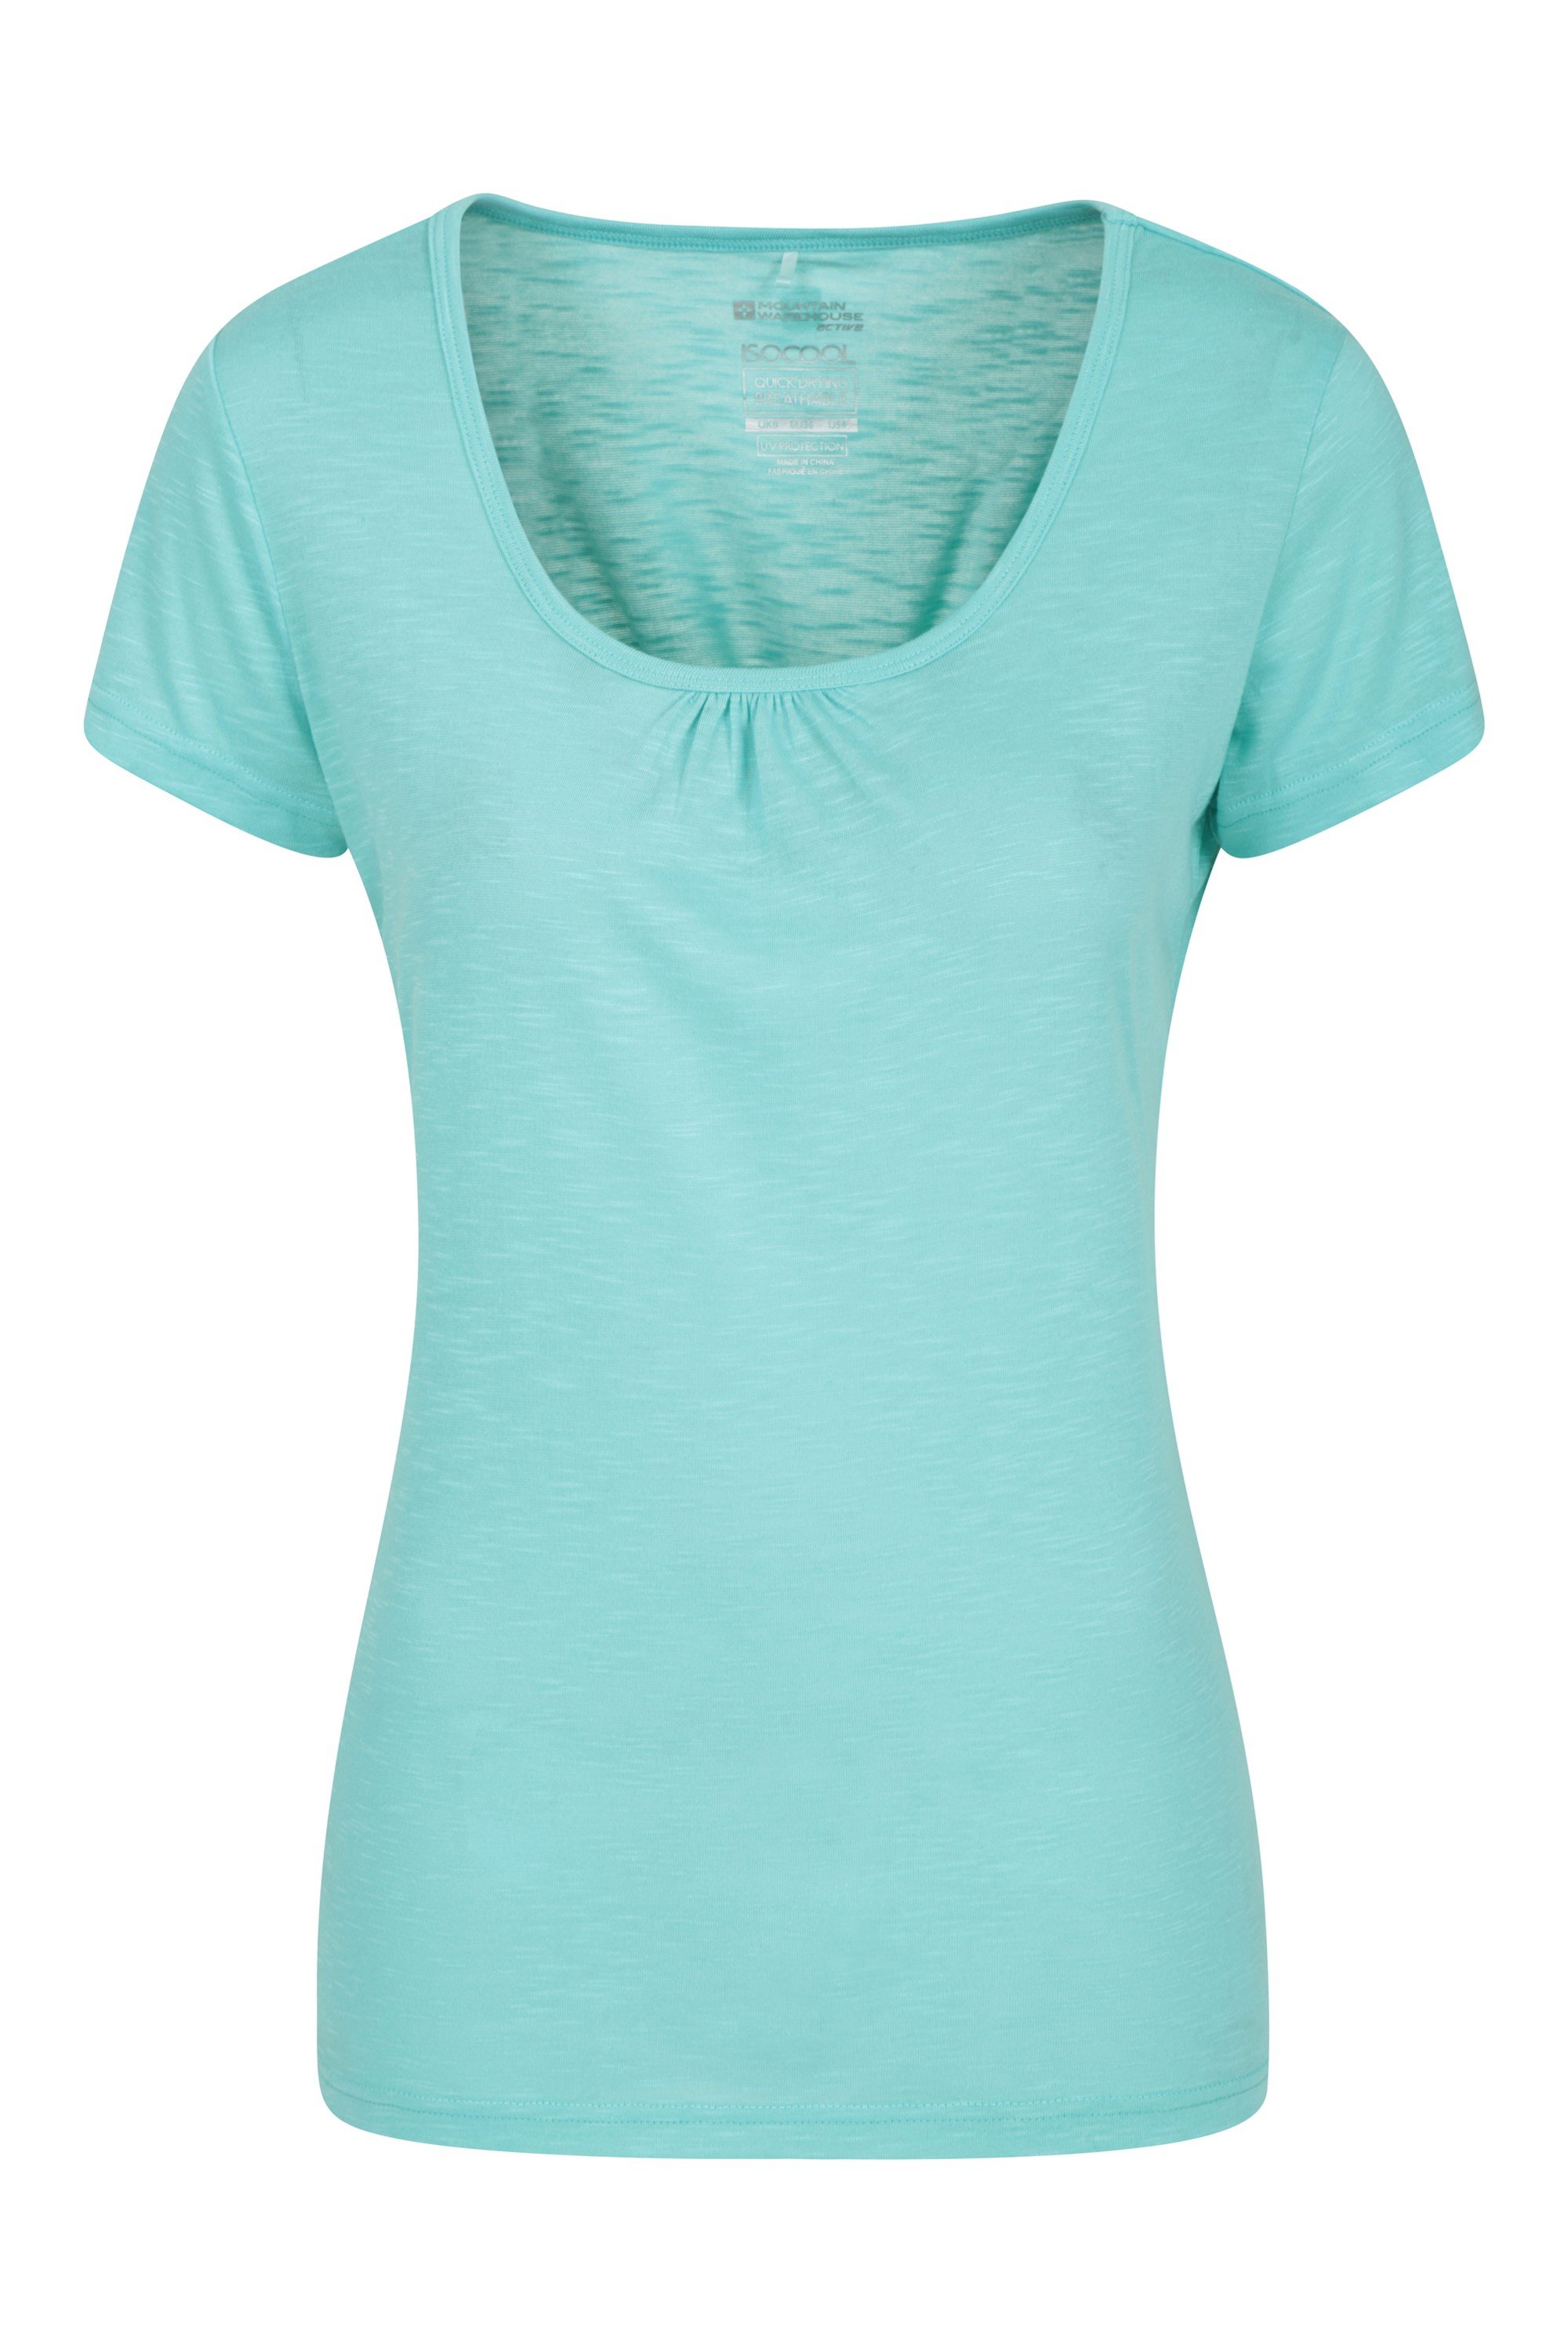 T-shirt femme Agra base layer - Vert